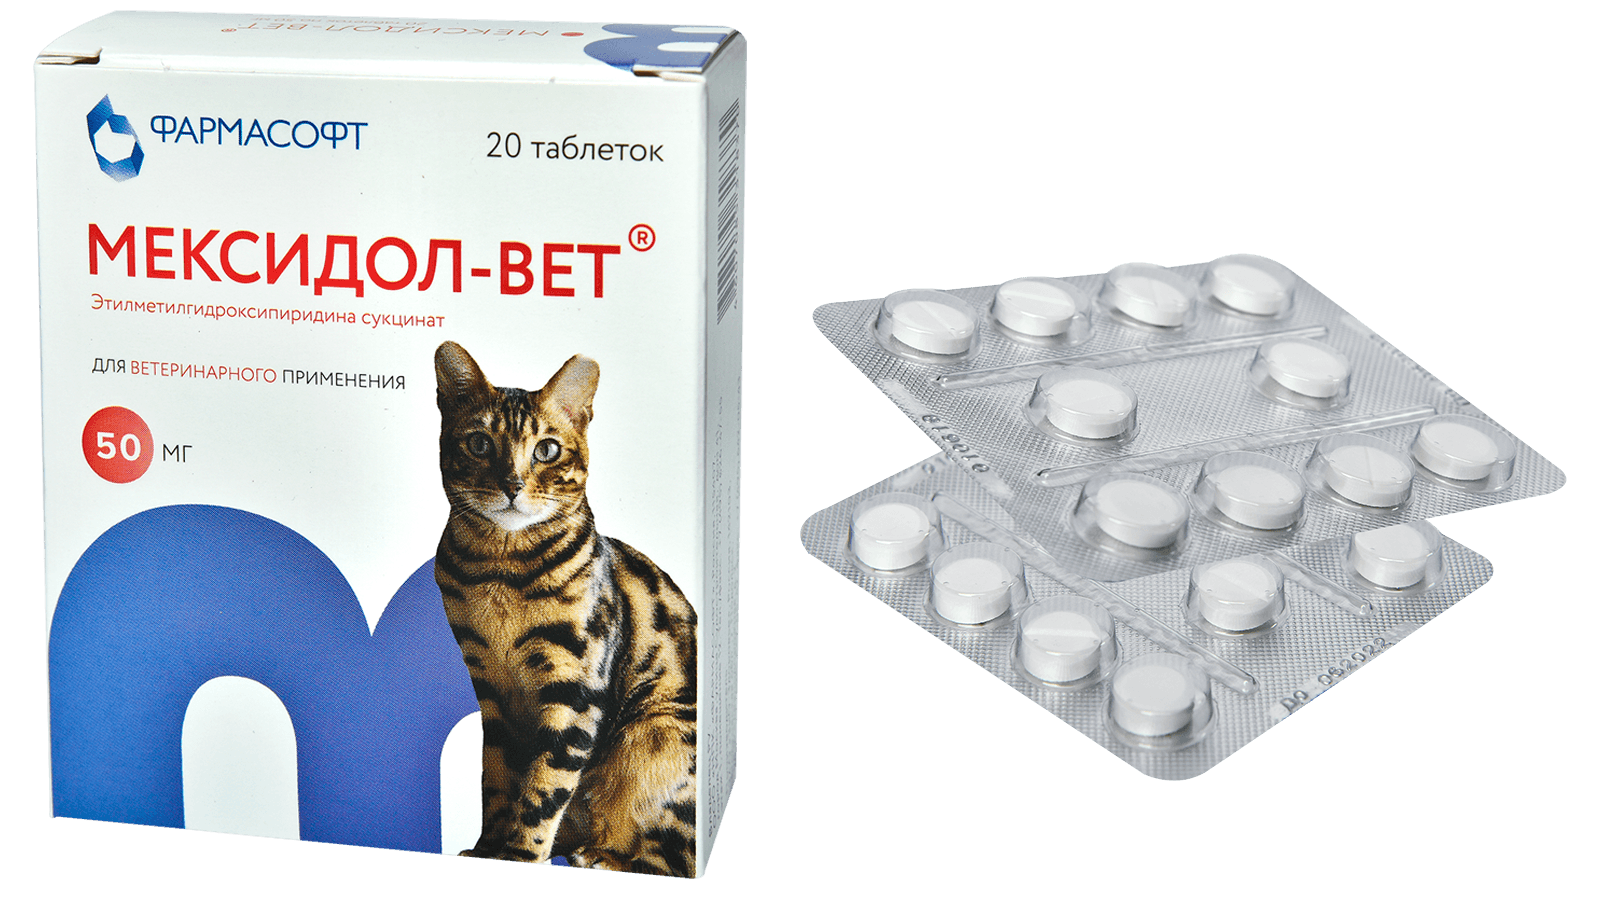 МЕКСИДОЛ-ВЕТ (20 таблеток х 50 мг) Фармасофт - фото2